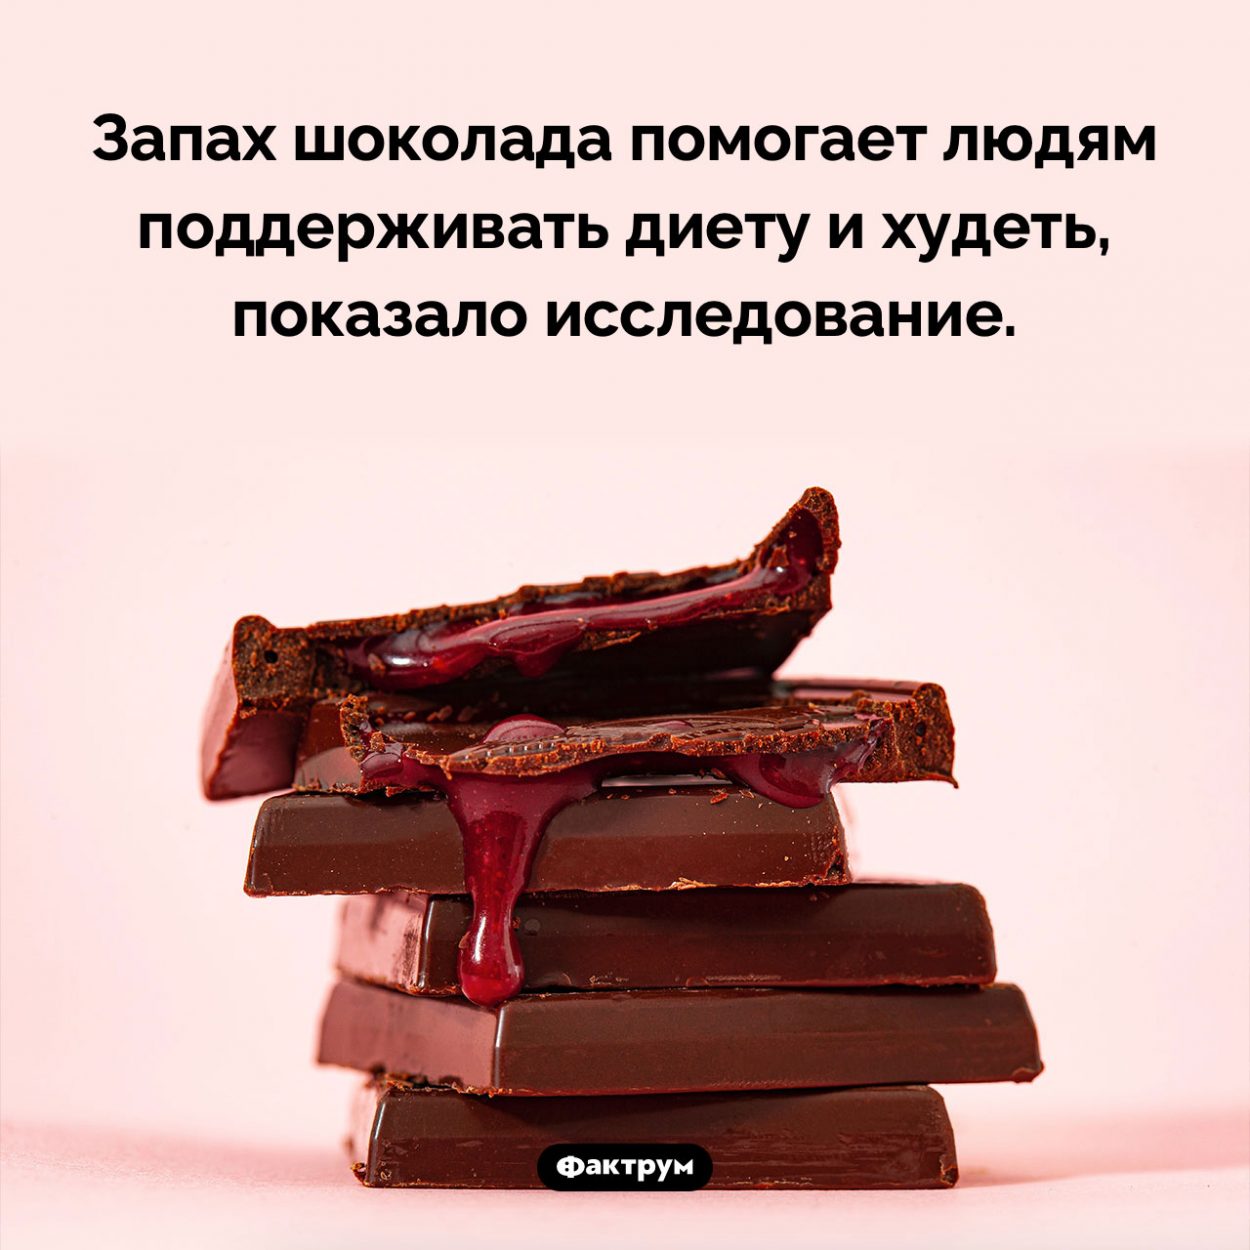 Полезное свойство запаха шоколада. Запах шоколада помогает людям поддерживать диету и худеть, показало исследование.